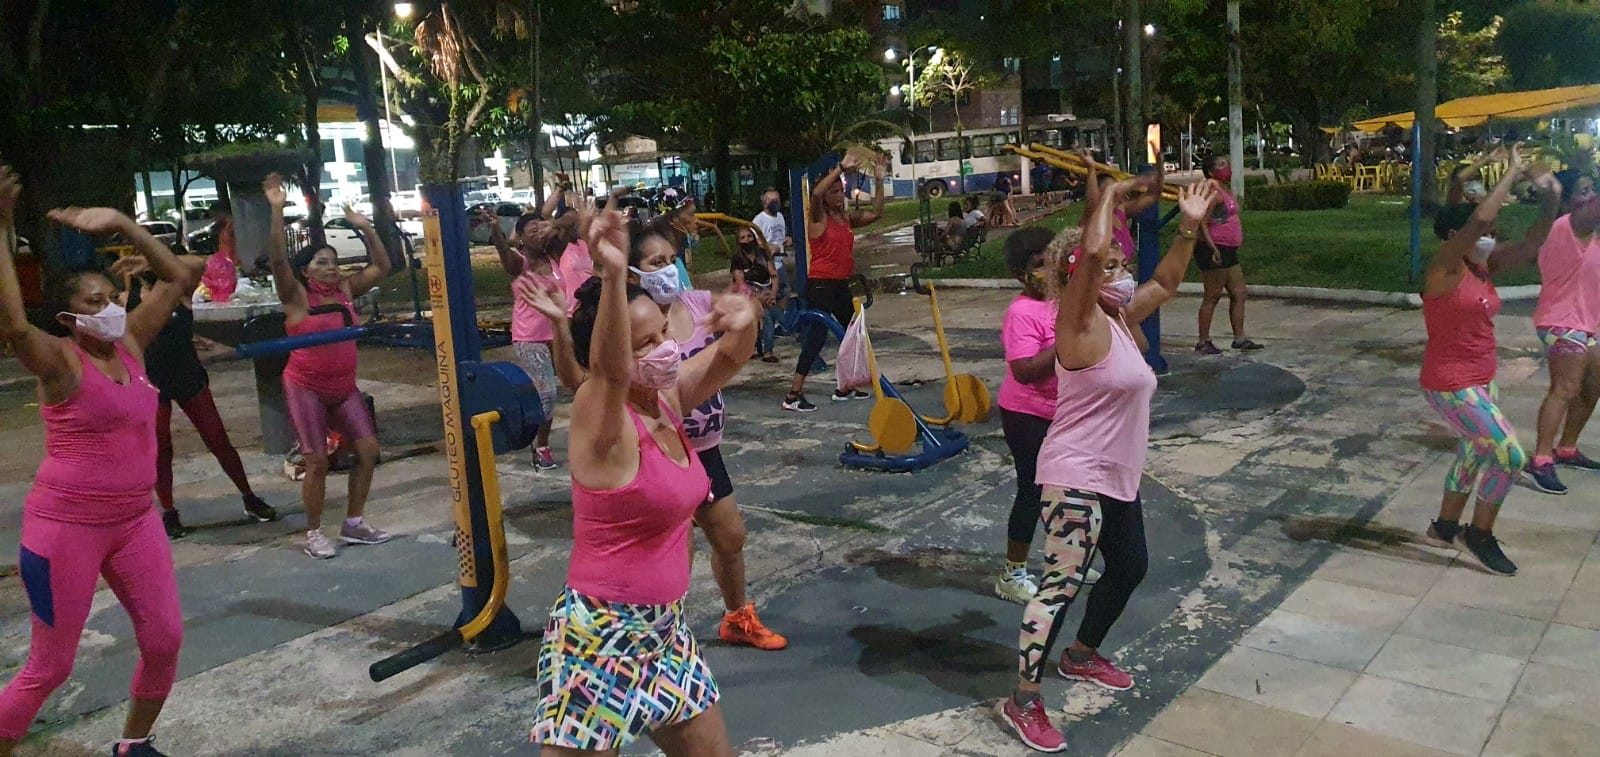 Esportes e ginástica - São Brás, Belém - Pará